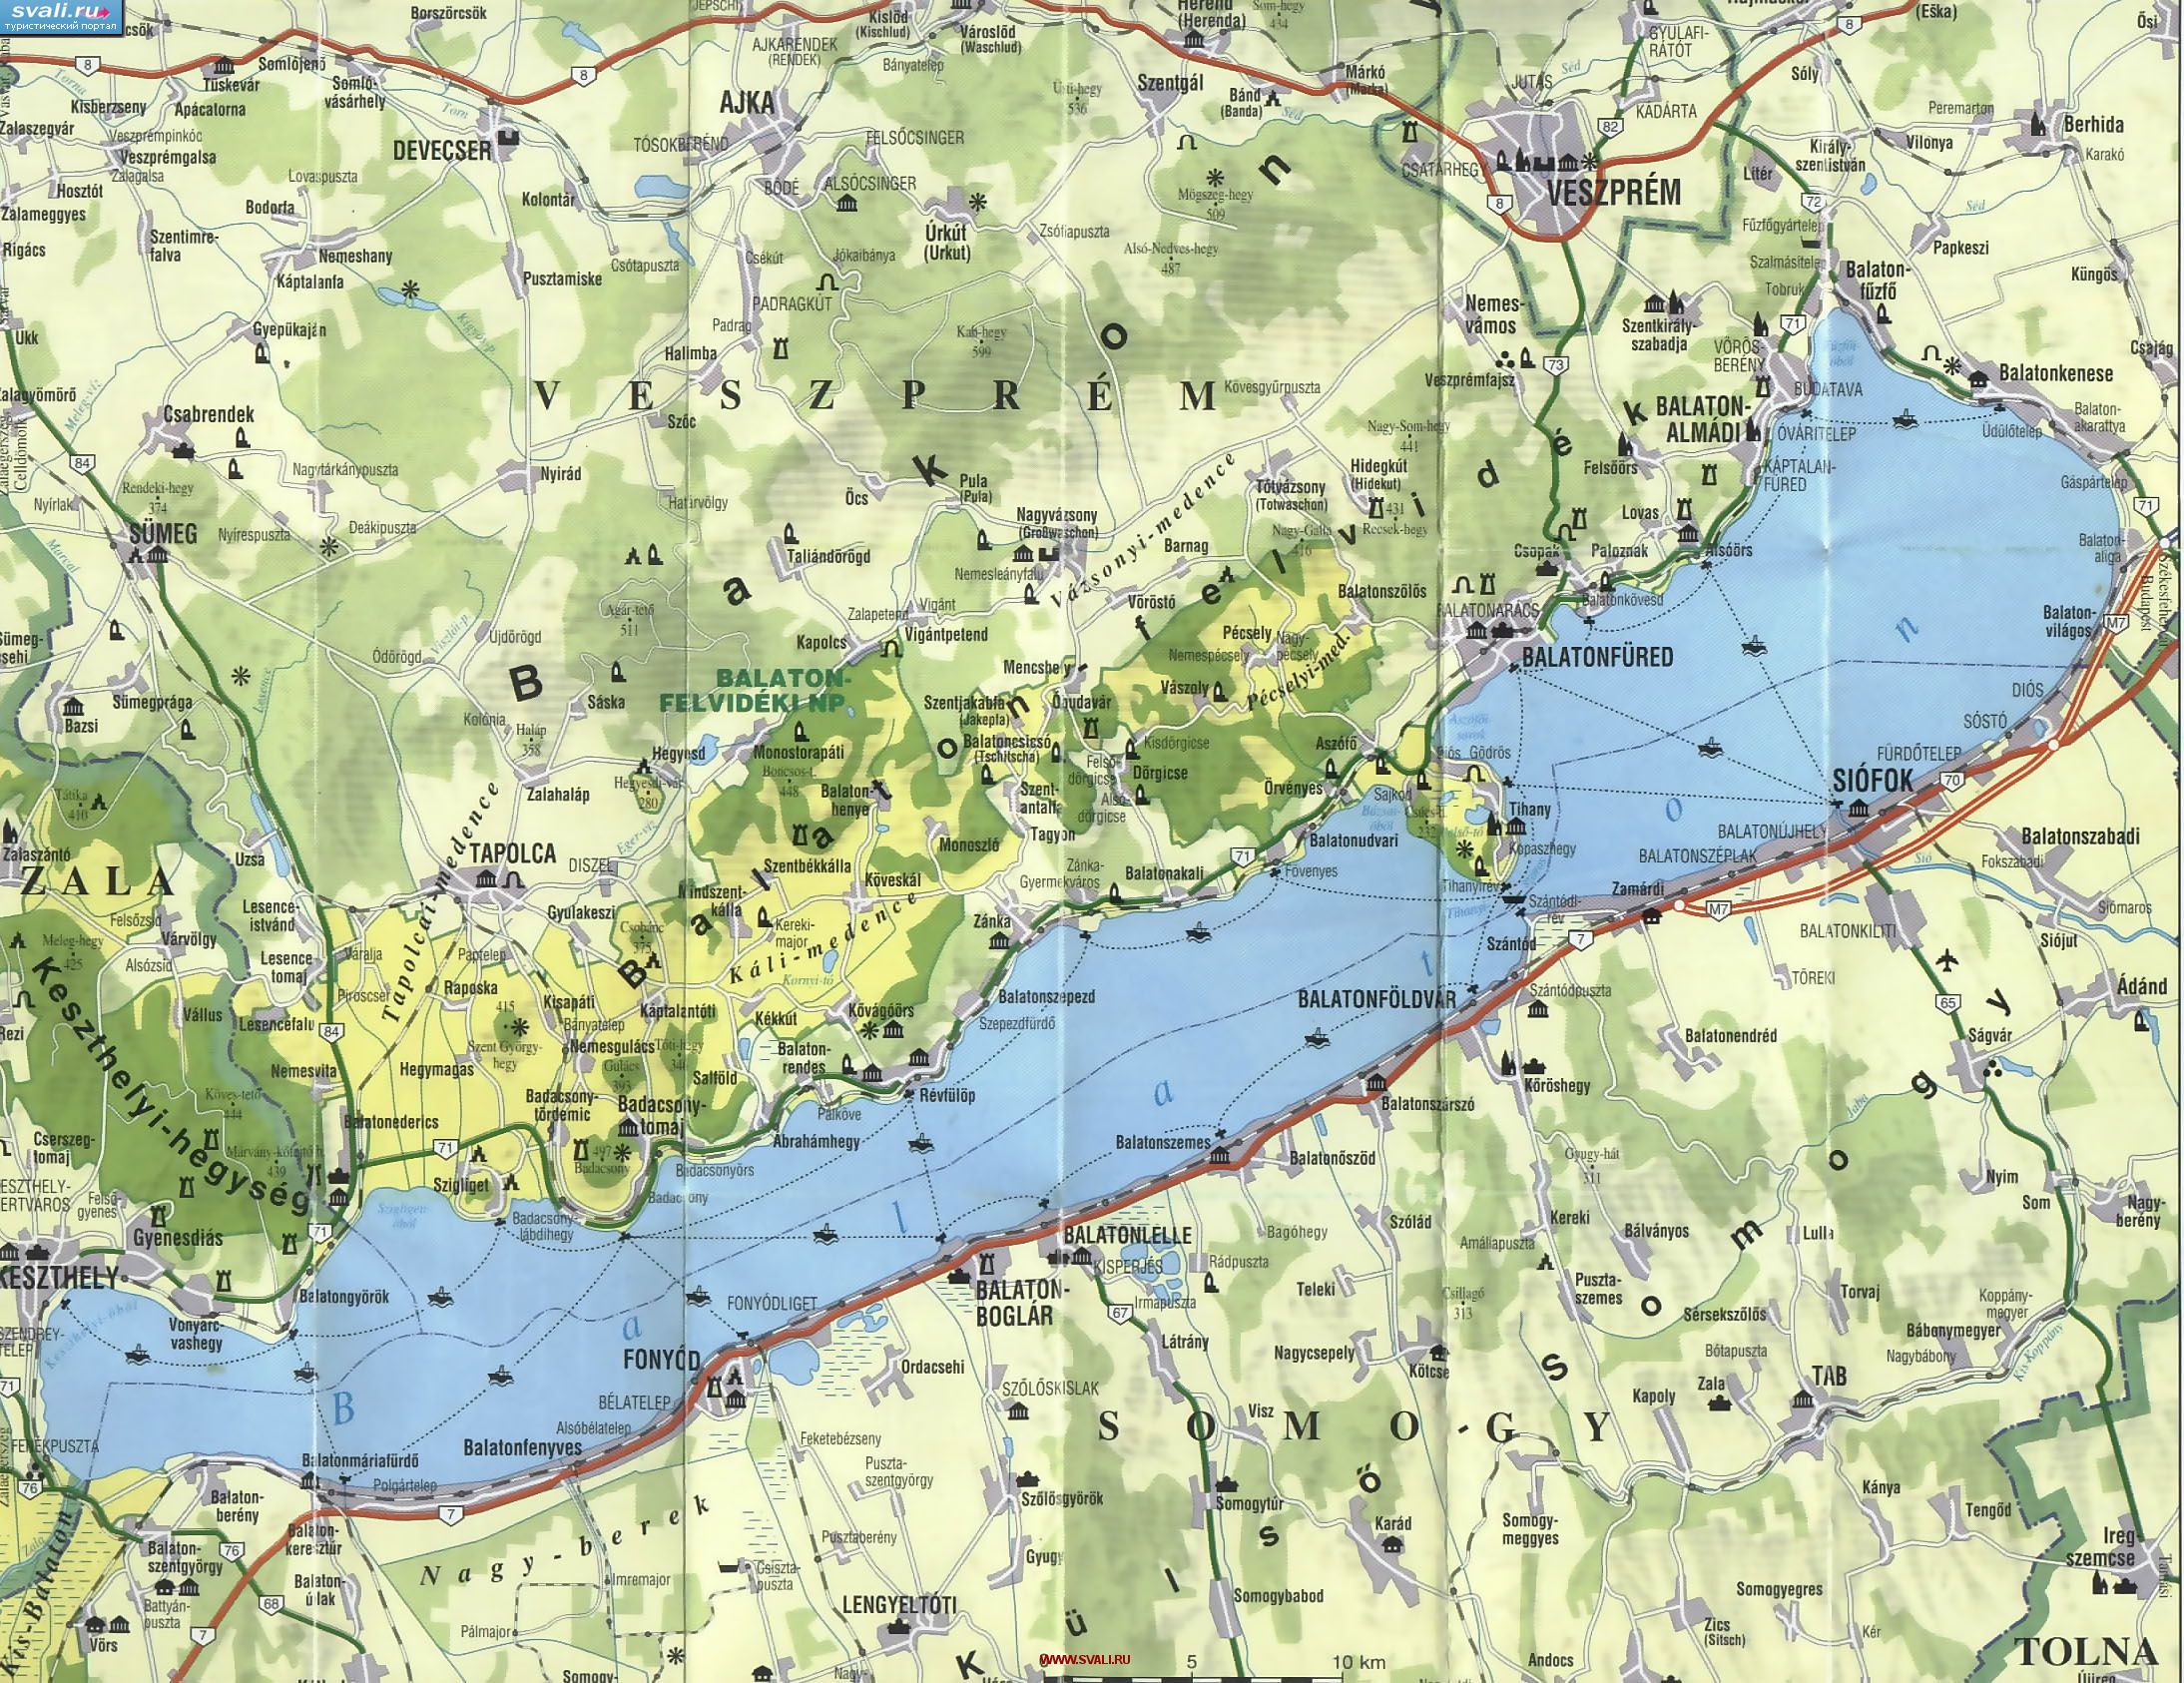 Подробная карта окрестностей озера Балатон, Венгрия (венг.)